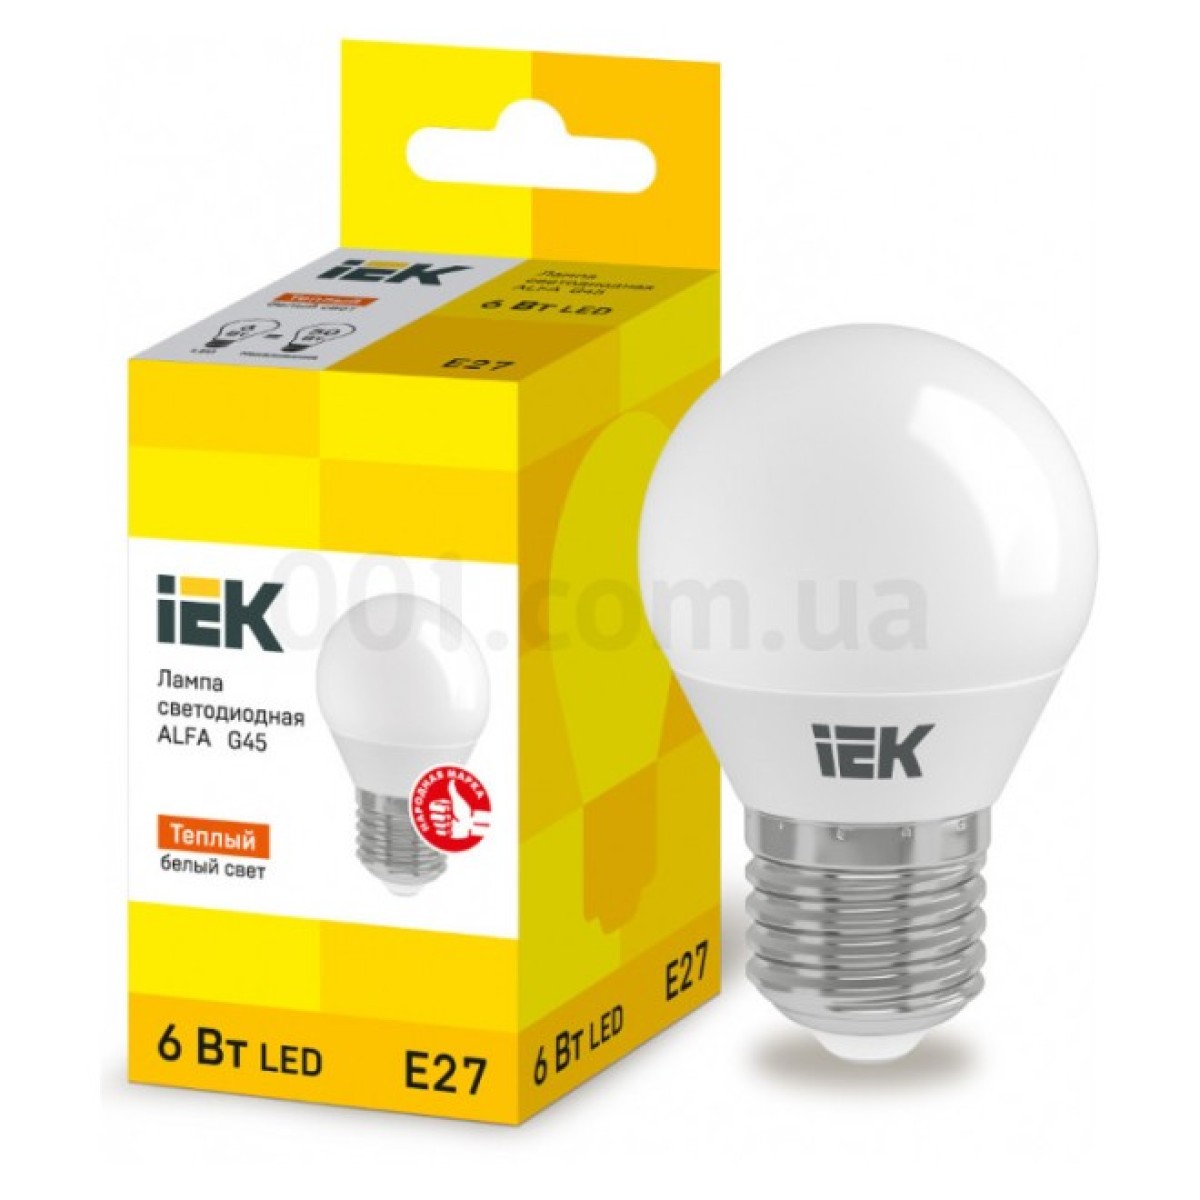 Світлодіодна лампа LED ALFA G45 (куля) 6 Вт 230В 3000К E27, IEK 256_256.jpg